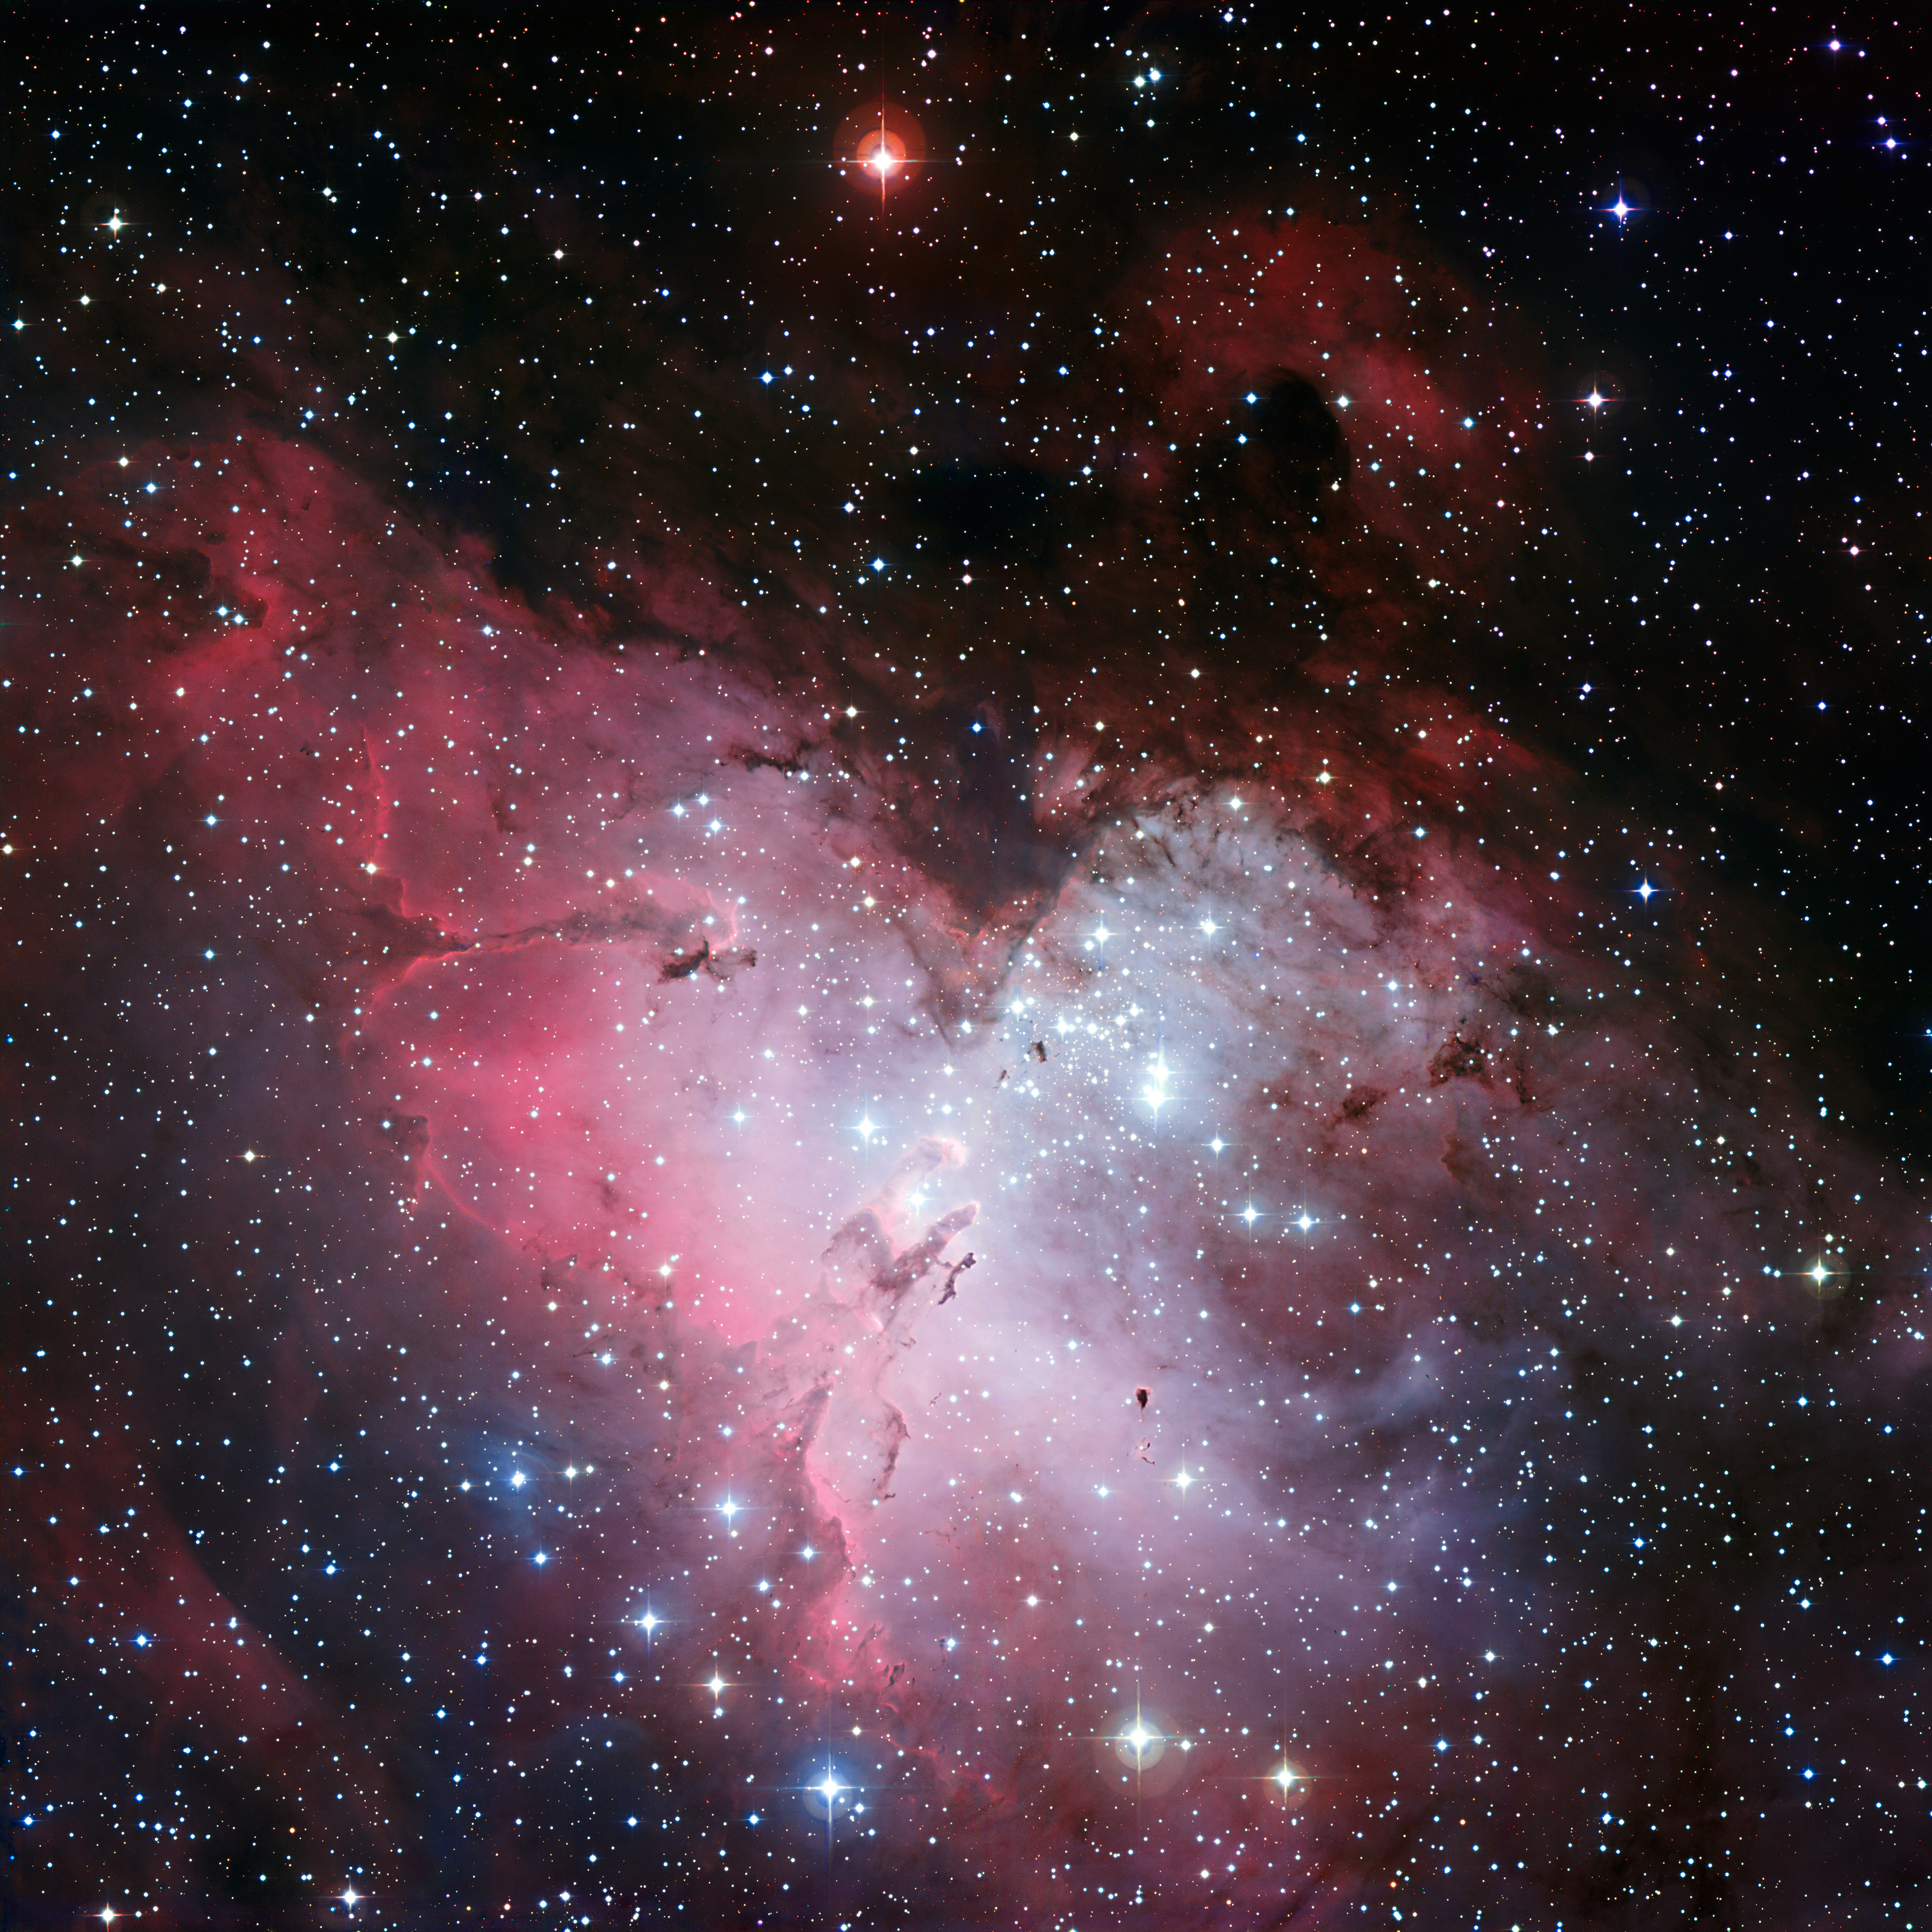 Trójkolorowa (B,V,R) mozaika obrazów Mgławicy Orzeł (M16 lub NGC 6611) uzyskana za pomocą 2,2m teleskopu MPG/ESO w Obserwatorium La Silla (Chile). Cała mgławica rozciąga się na ~70 x 55 l.św., a w pobliżu środka zdjęcia widać tzw. Filary Stworzenia w wielkości ~4-5 l.św. Ta panorama o dużym polu widzenia prezentuje również kilka innych obszarów tworzenia się gwiazd, jak również ogromną liczbę gwiazd przed i za Mgławicą Orzeł. Filary Stworzenia są oświetlone przez gromadę jasnych gwiazd NGC 6611 (u góry po prawej względem Filarów Stworzenia), w której znajdują się masywne i gorące gwiazdy. W lewej-górnej ćwiartce zdjęcia widać jeszcze jeden duży filar zwany obrazowo „Iglicą” lub „Czarnym Filarem” (ang. „Spire” / „Black Pillar”) o długości około 9,5 l.św. Źródło: ESO